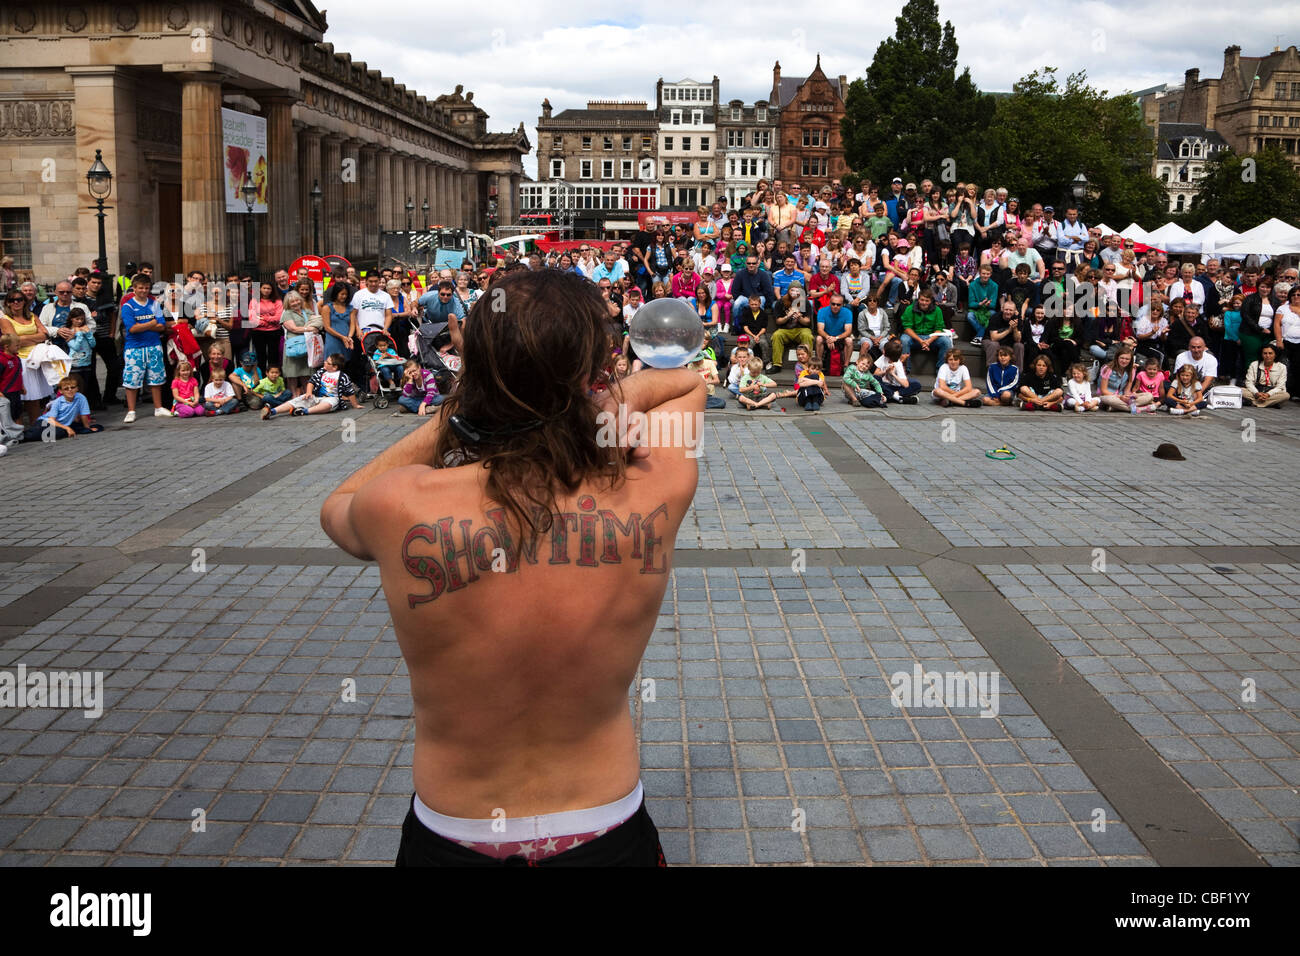 Animatore di strada al Edinburgh Fringe Festival con un tatuaggio di 'Showtime' sul suo retro Foto Stock